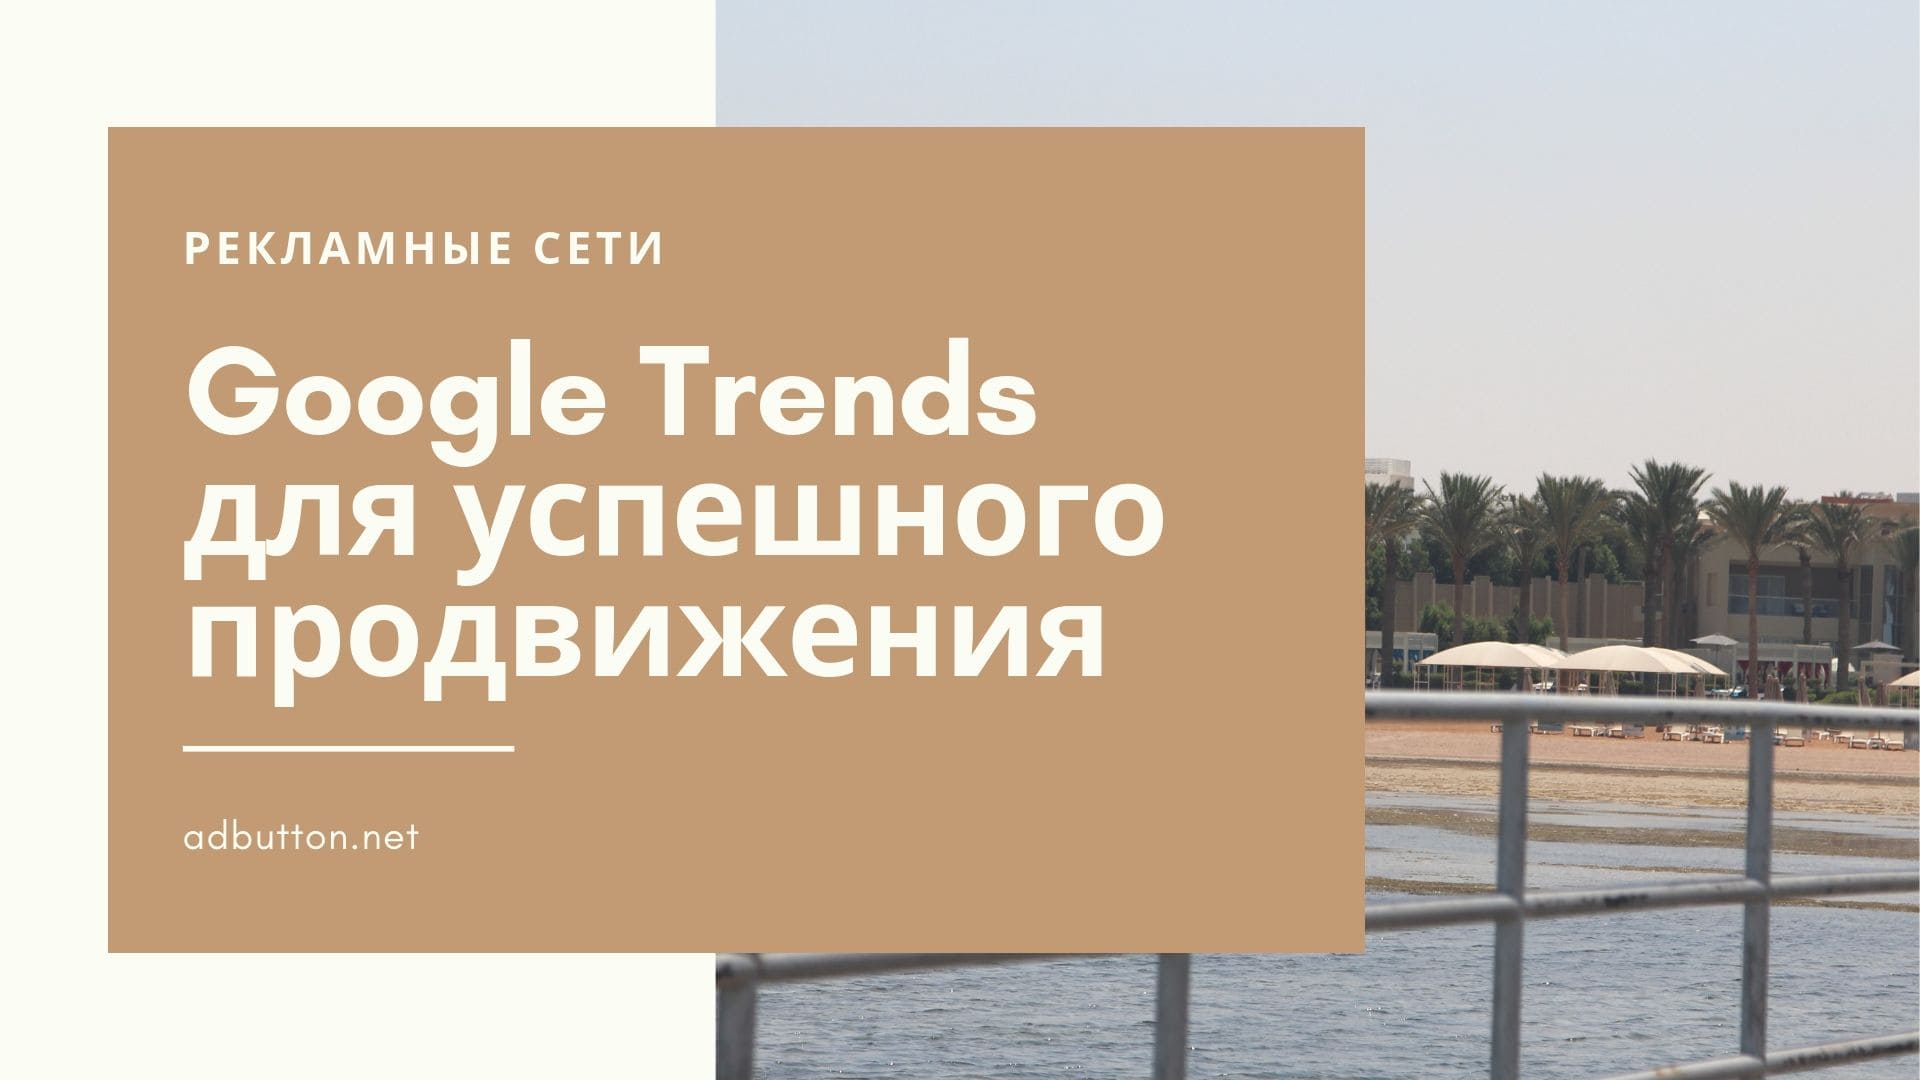 Google Trends: анализ трендов и популярность запросов по регионам